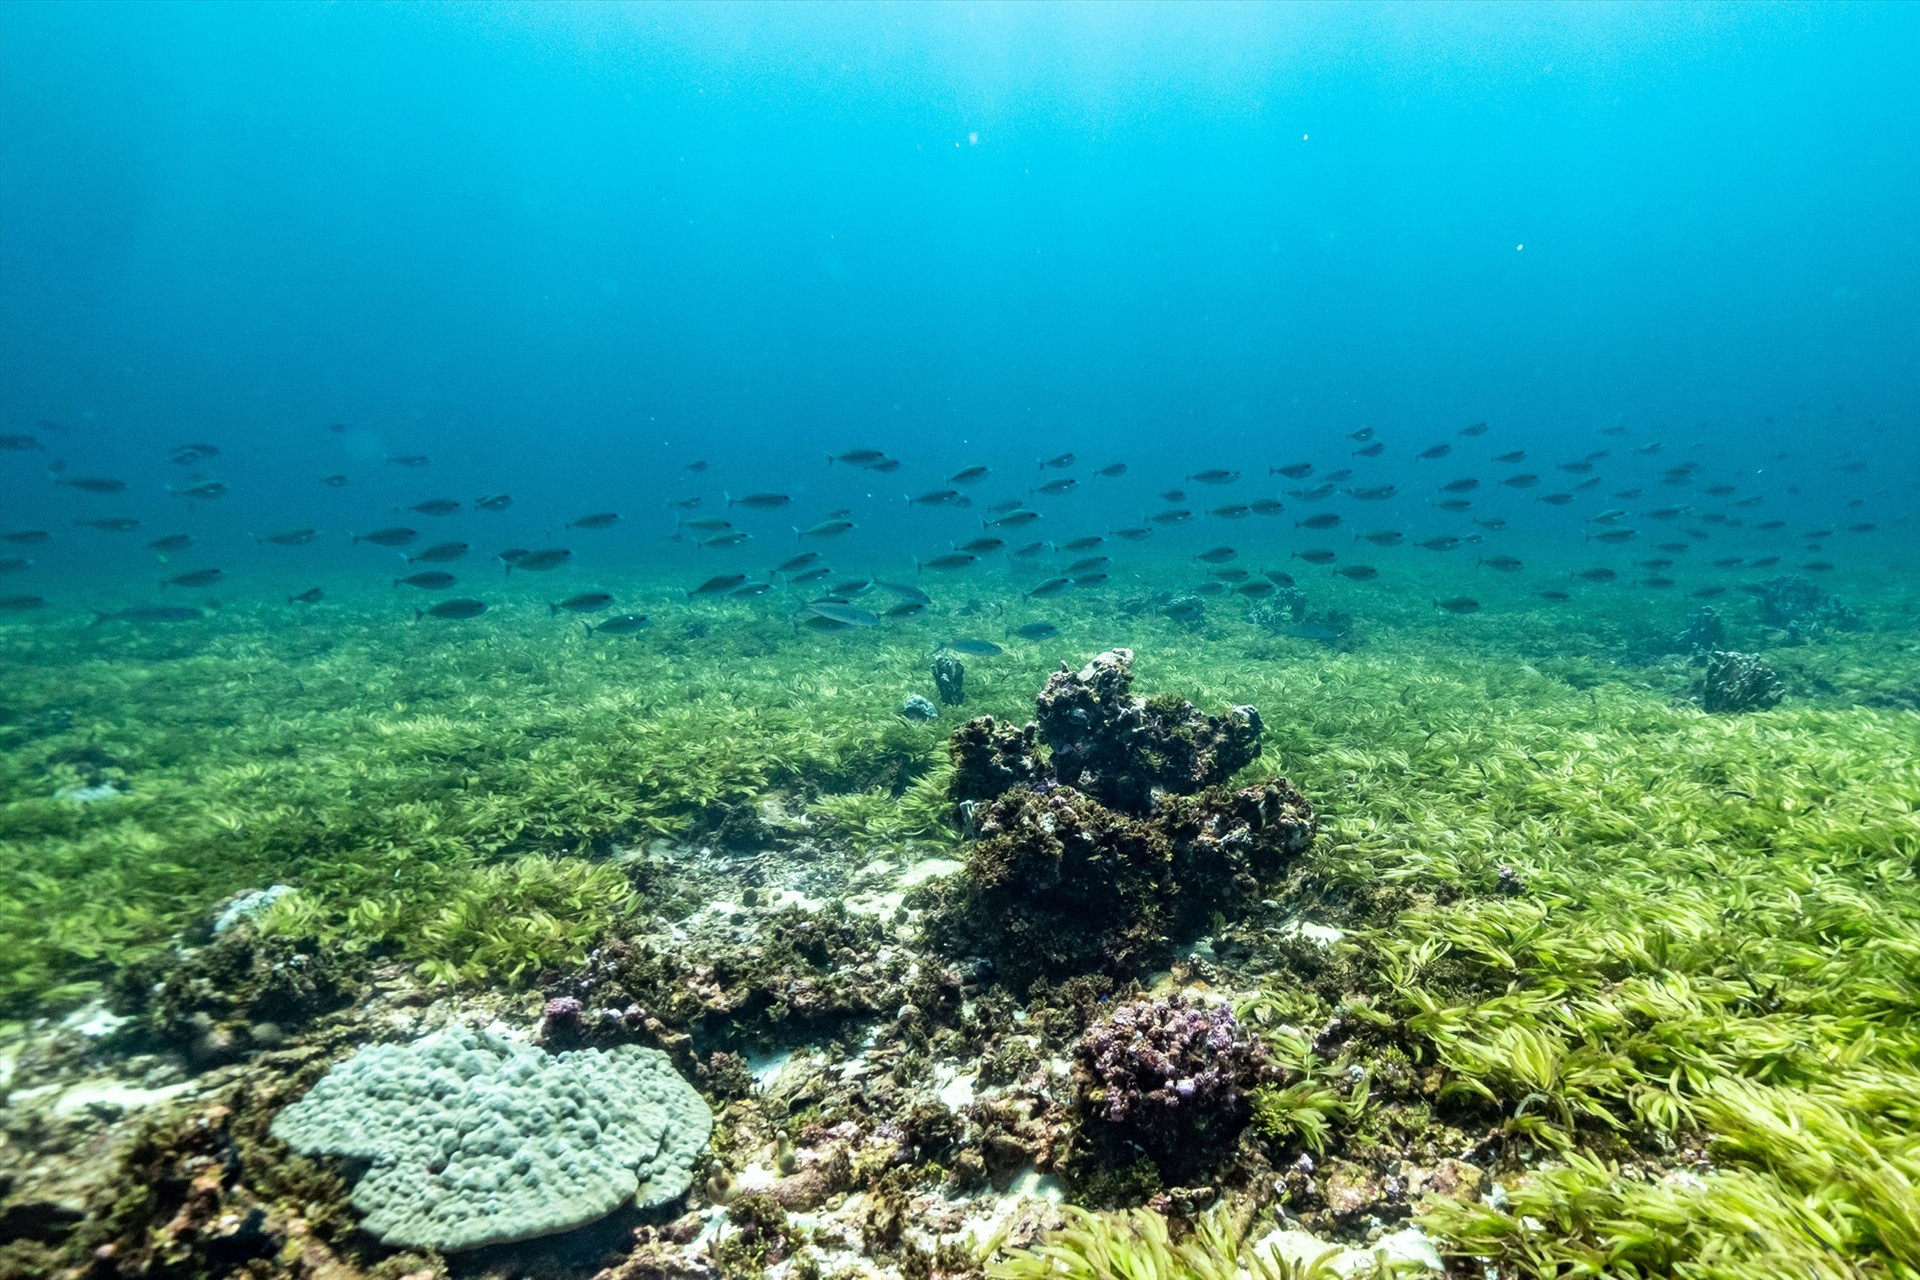 Thảm cỏ biển có thể là nơi cung cấp thức ăn cho sinh vật biển. Ảnh: Reuters